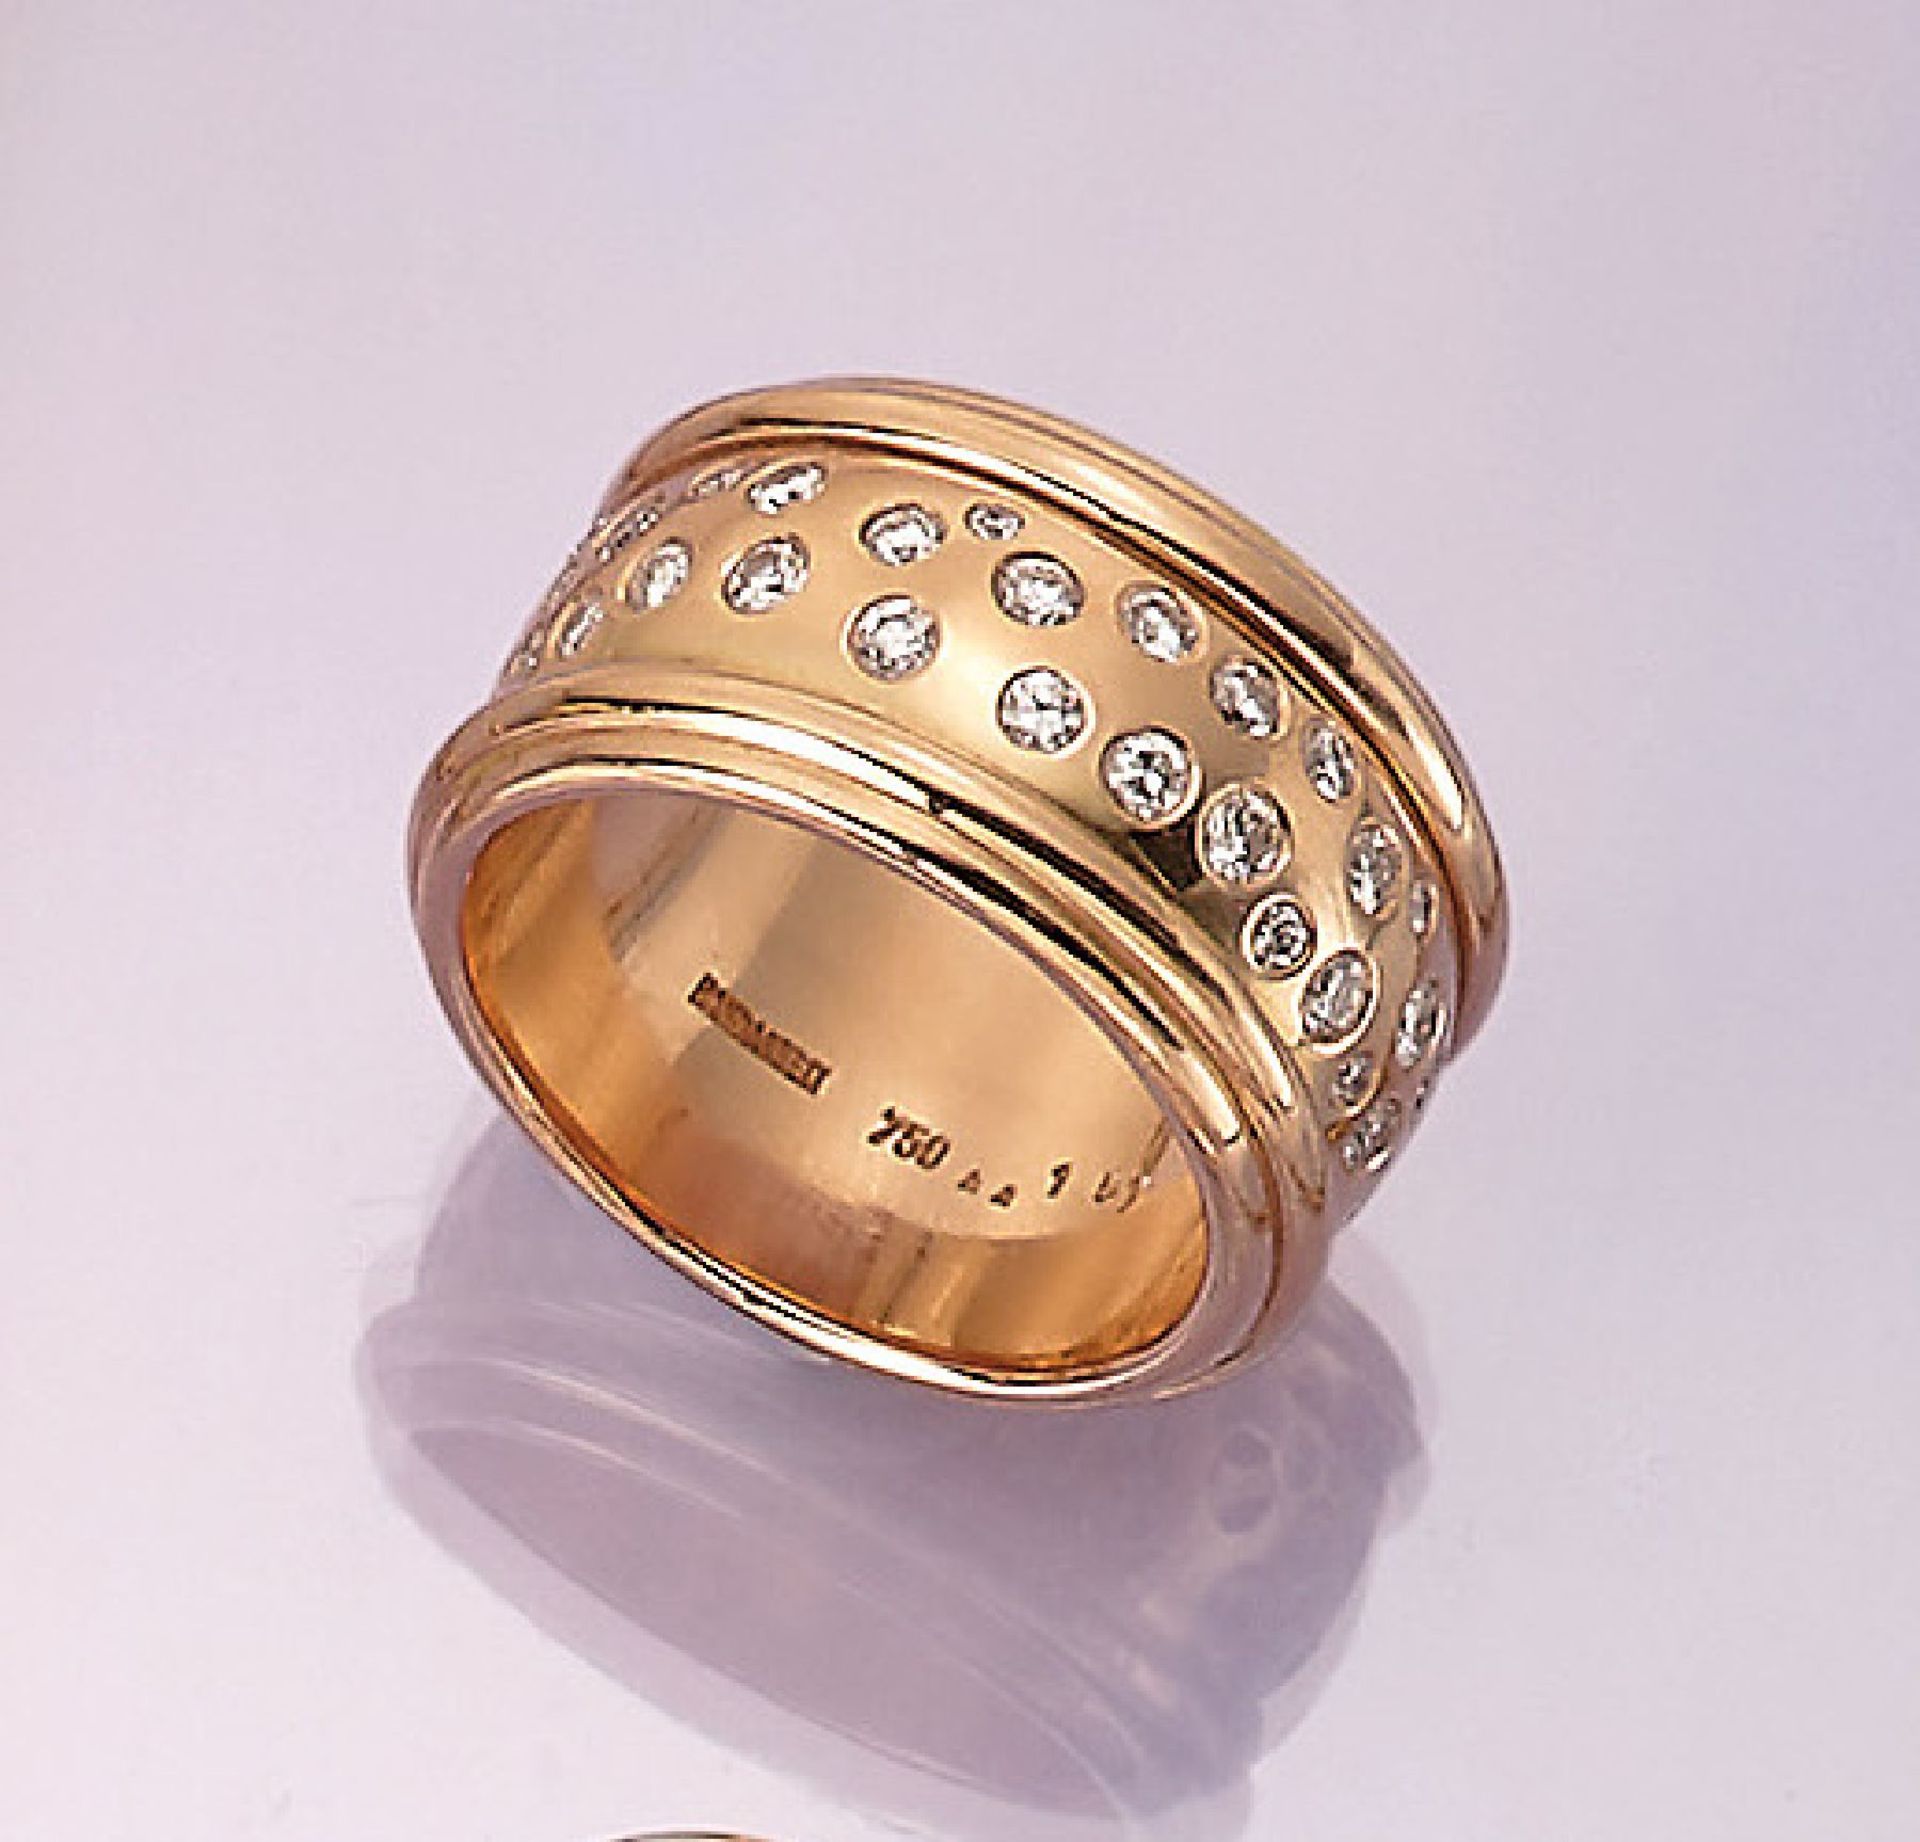 18 kt Gold Ring mit Brillanten, GG 750/000,rundum bes. mit 55 Brillanten zus. ca. 1.51 ct(grav.)